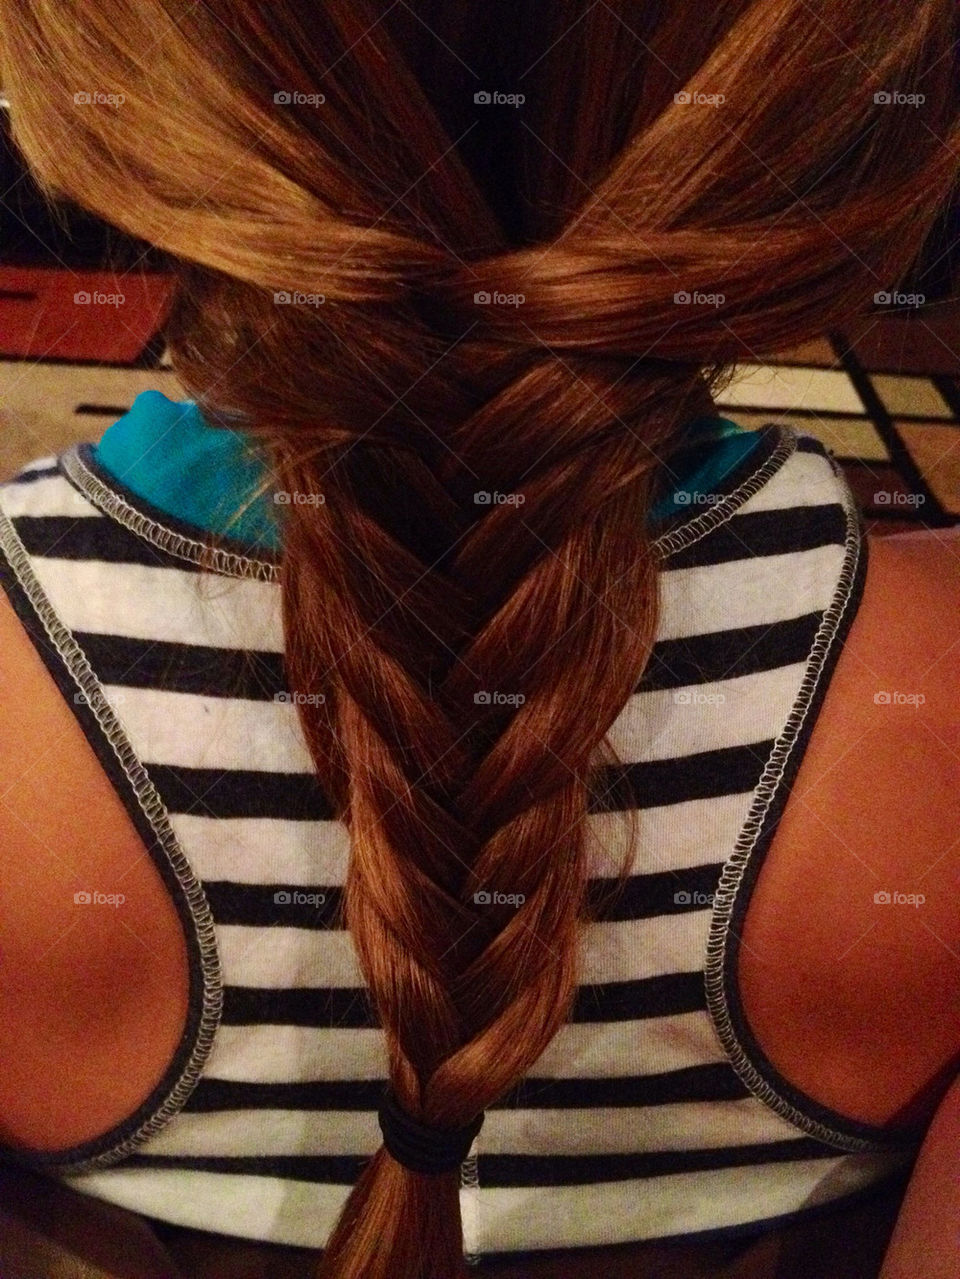 hair braid hairstyles fishtail by thelau1